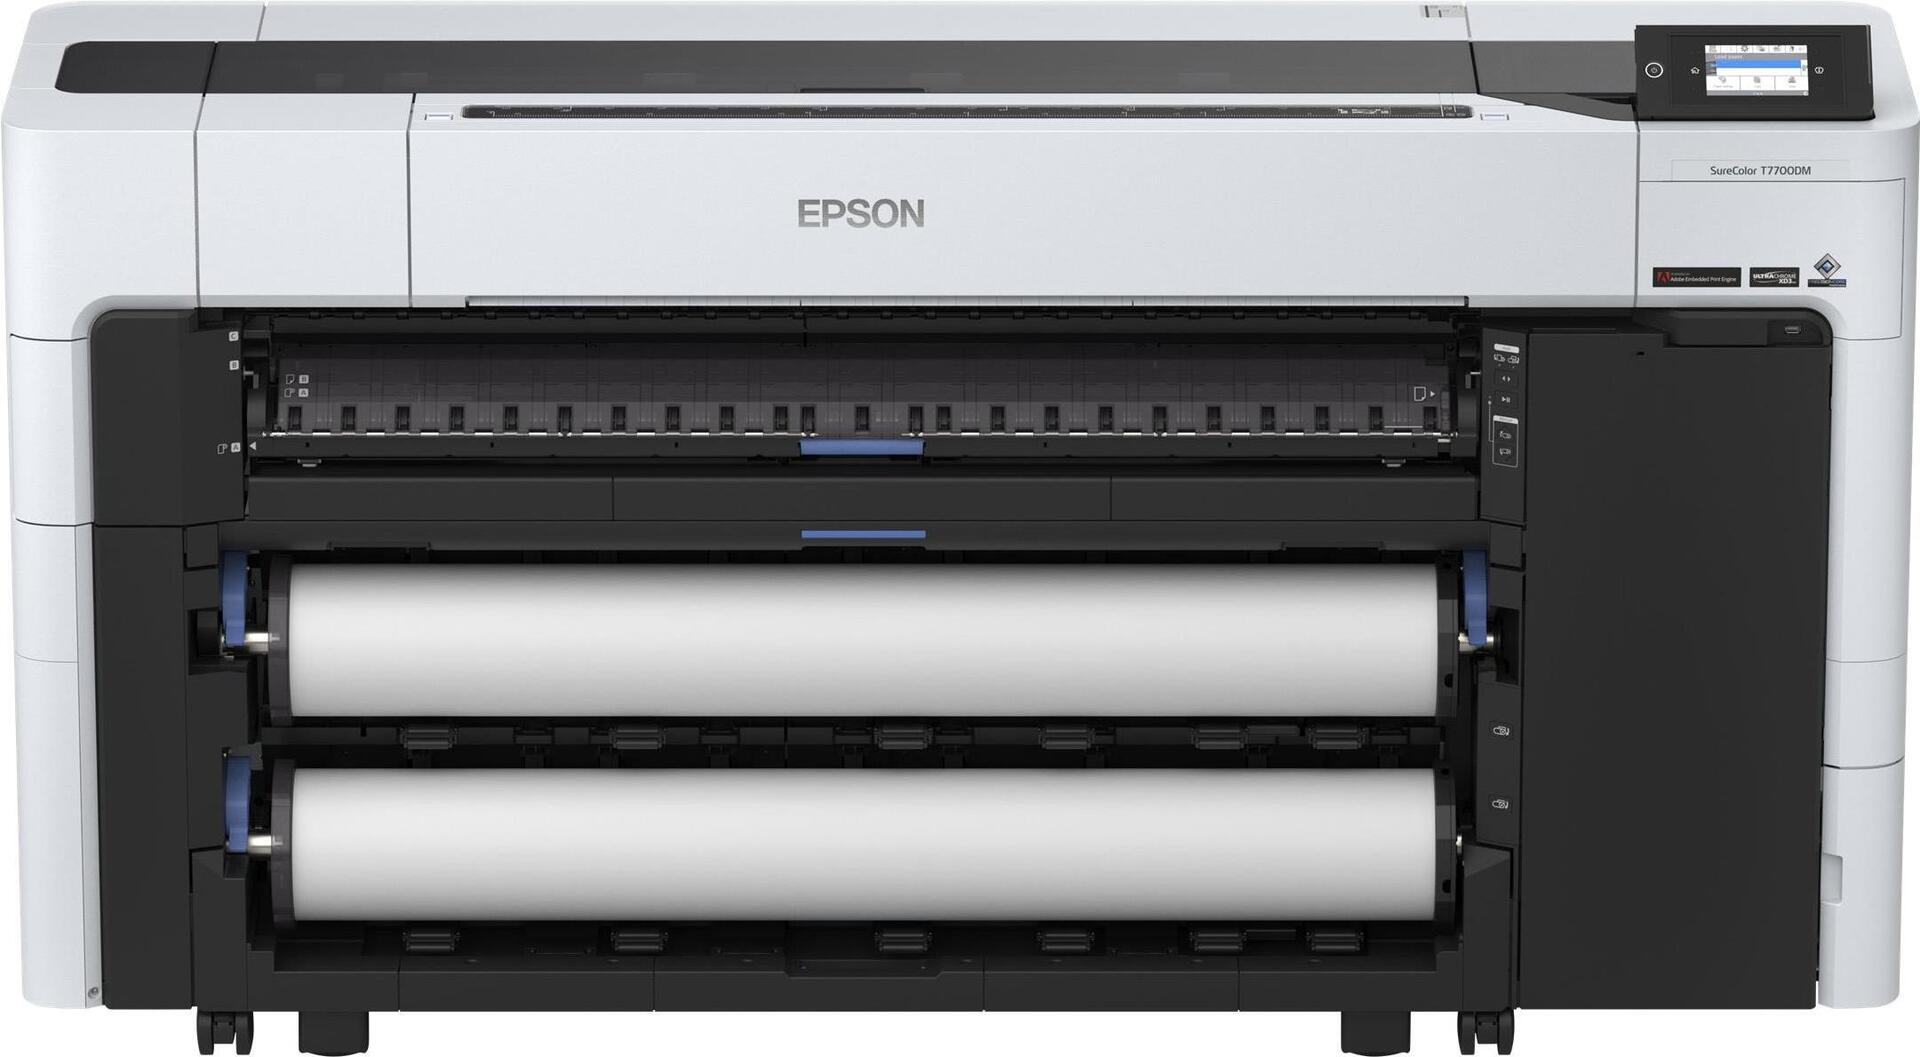 Epson SureColor T7700DM (C11CH84301A0)